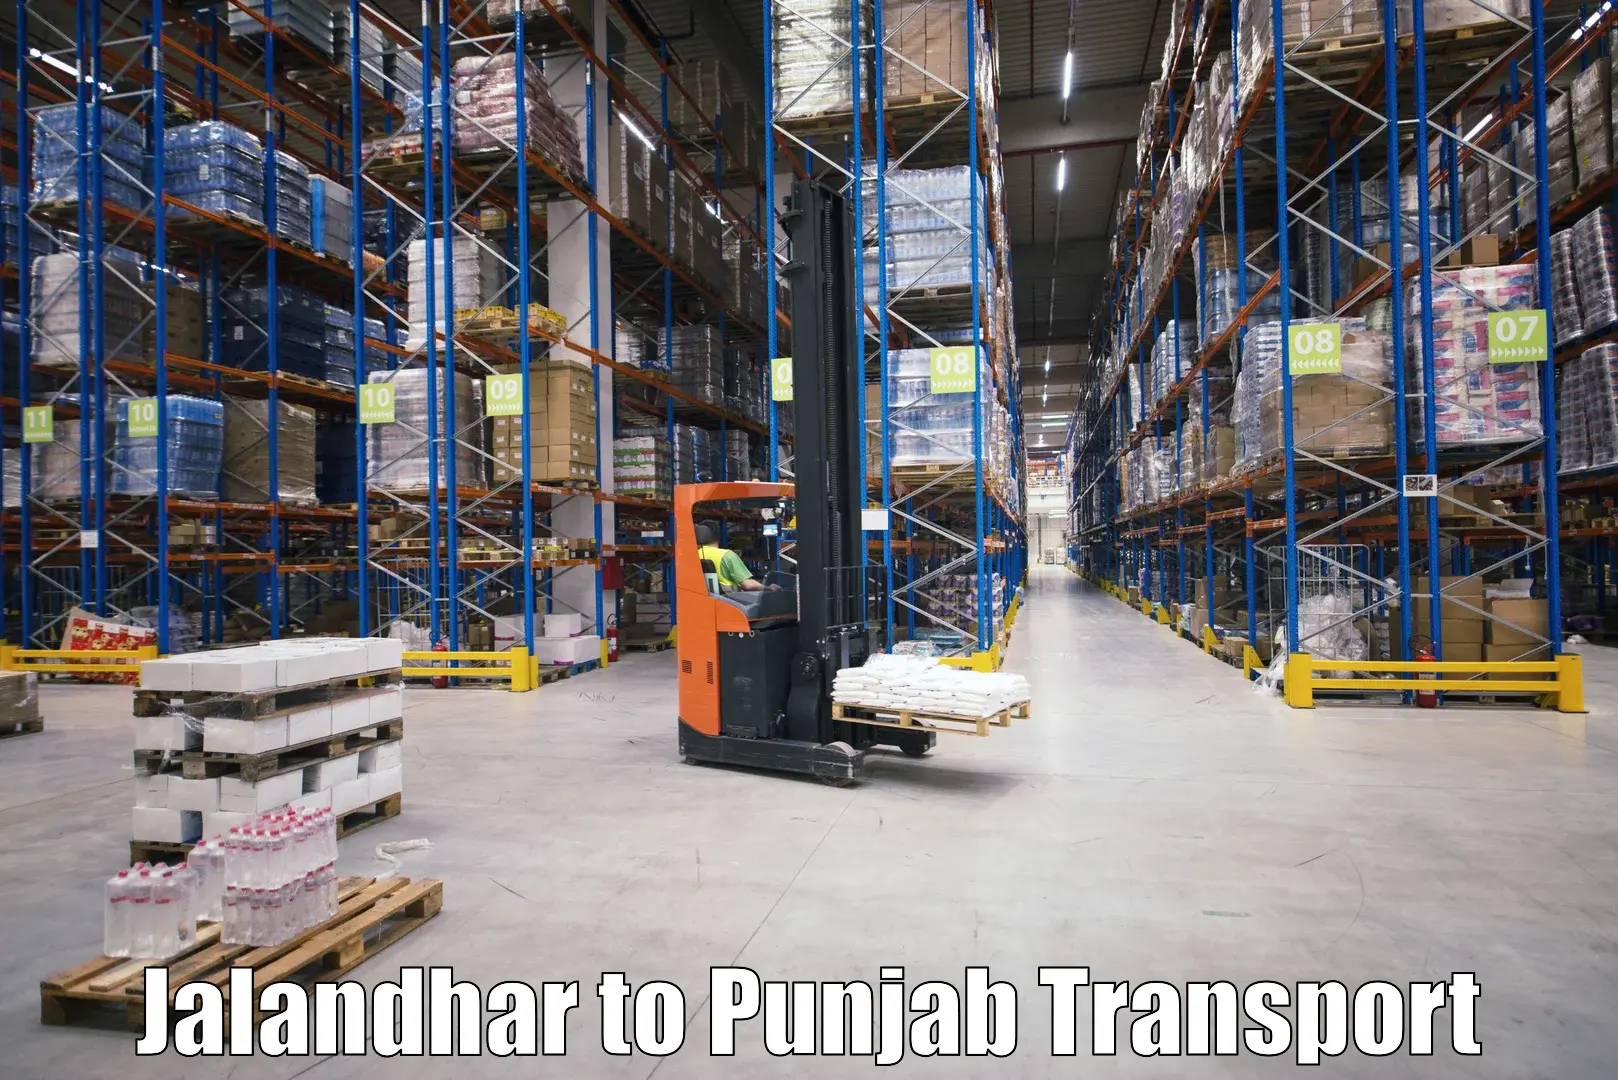 Express transport services Jalandhar to Pathankot